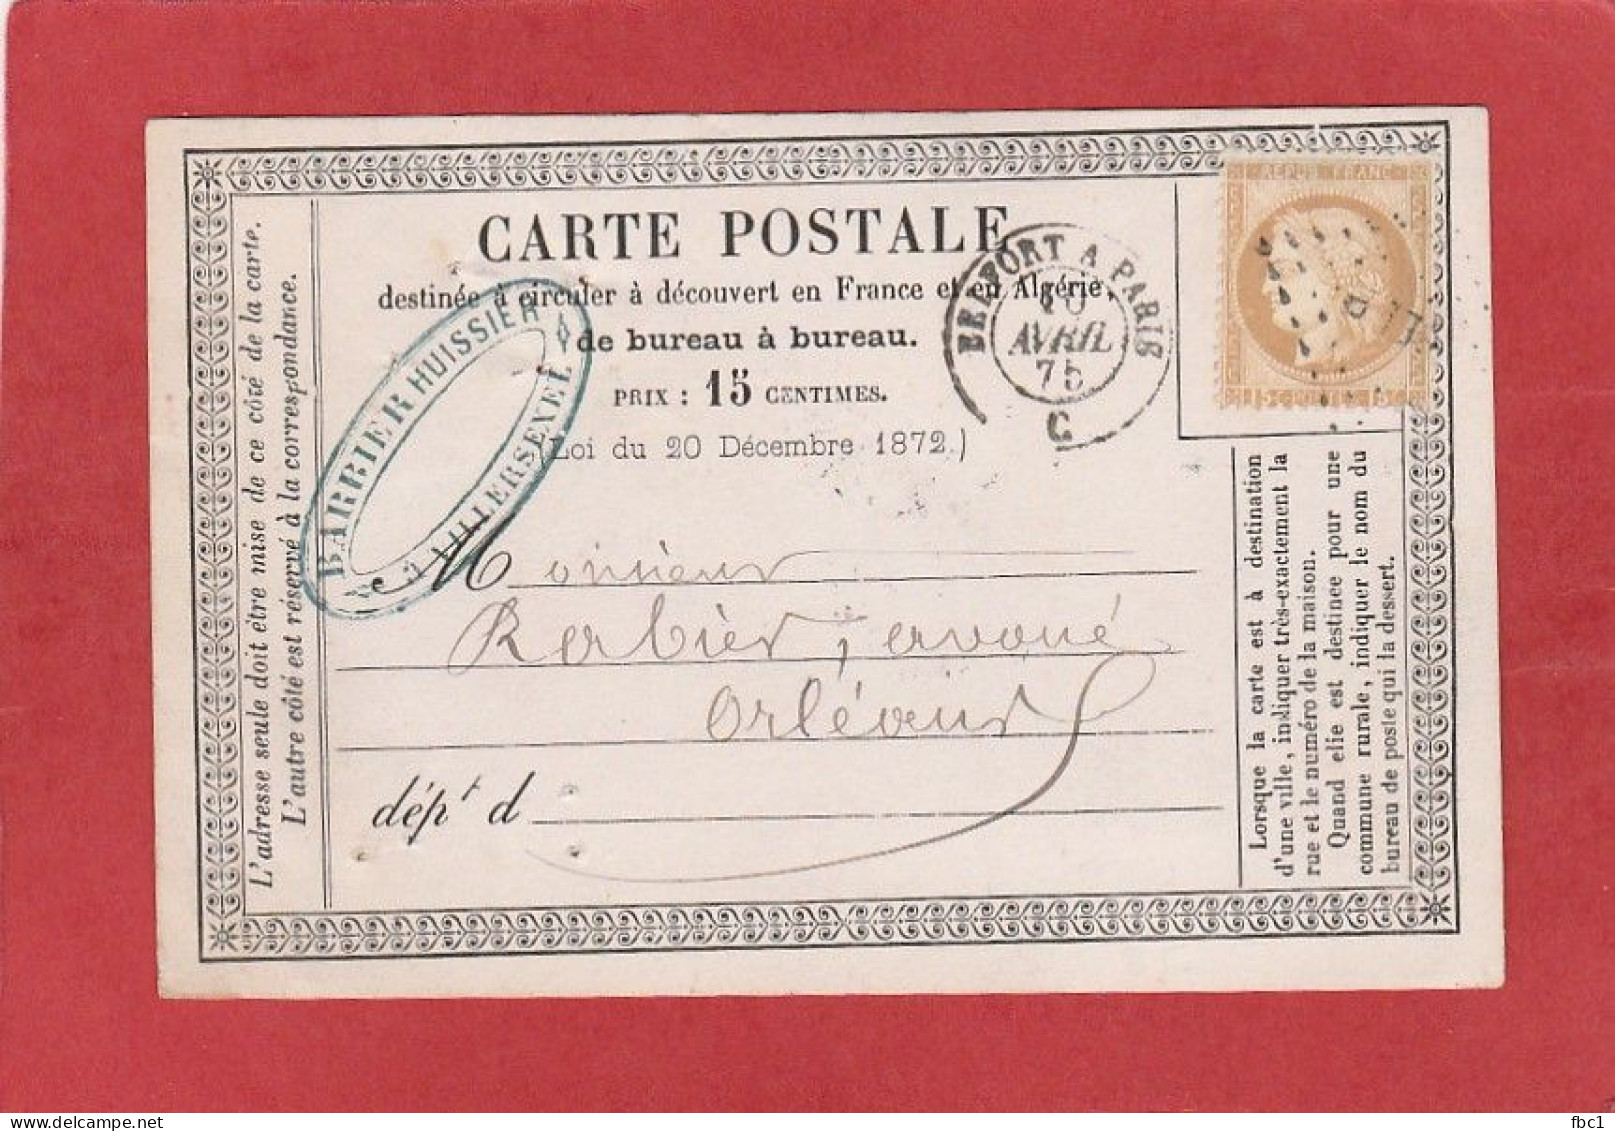 Carte Postale - Ambulant Belfort à Paris C Sur Cérès N°55 15C Vers Orléans 1875 (départ De Villersexel) - Cartes Précurseurs